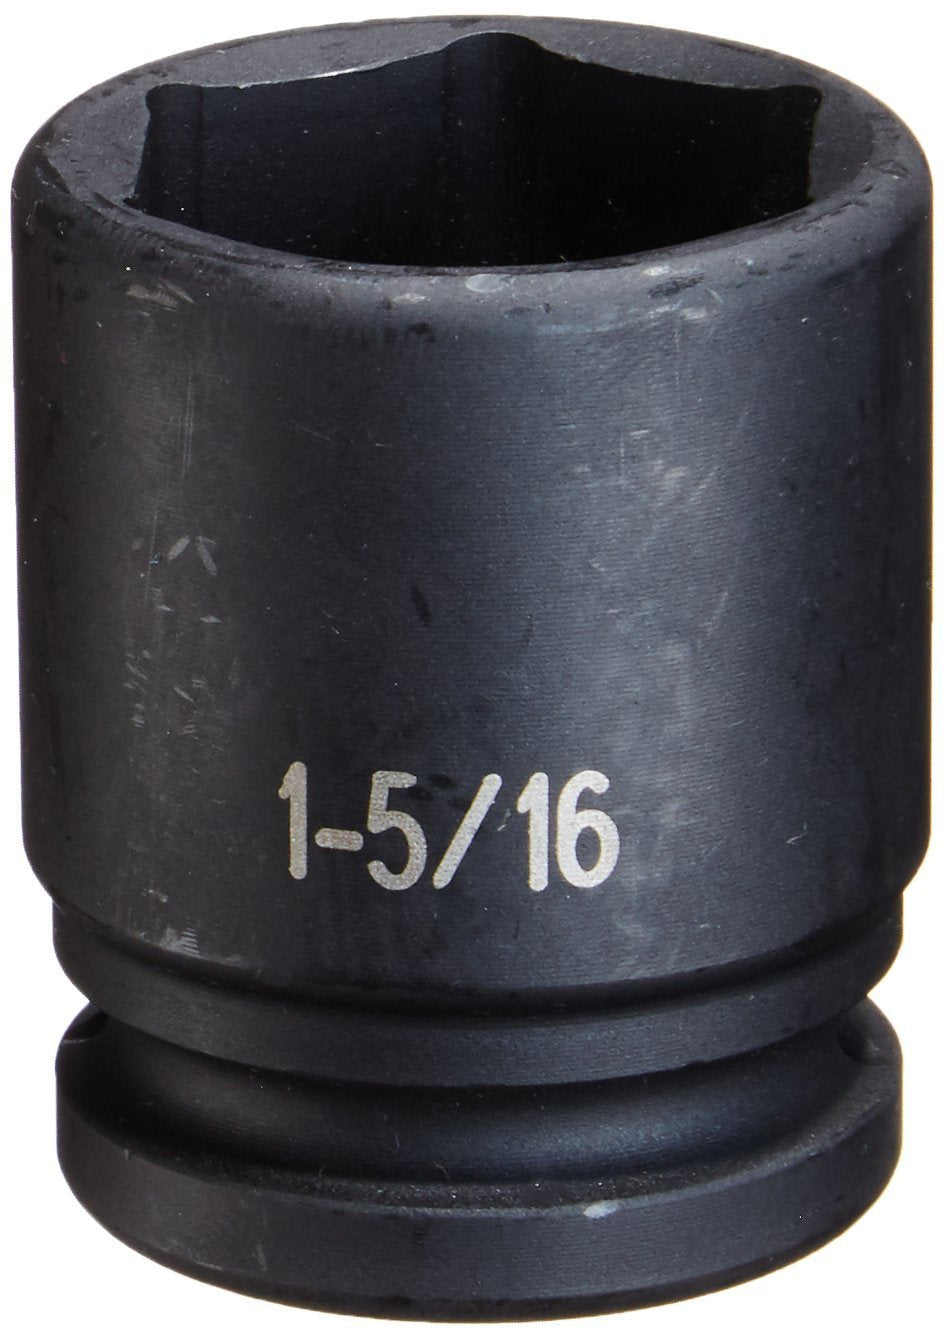  [AUSTRALIA] - Grey Pneumatic (3042R) 3/4" Drive x 1-5/16" Standard Socket